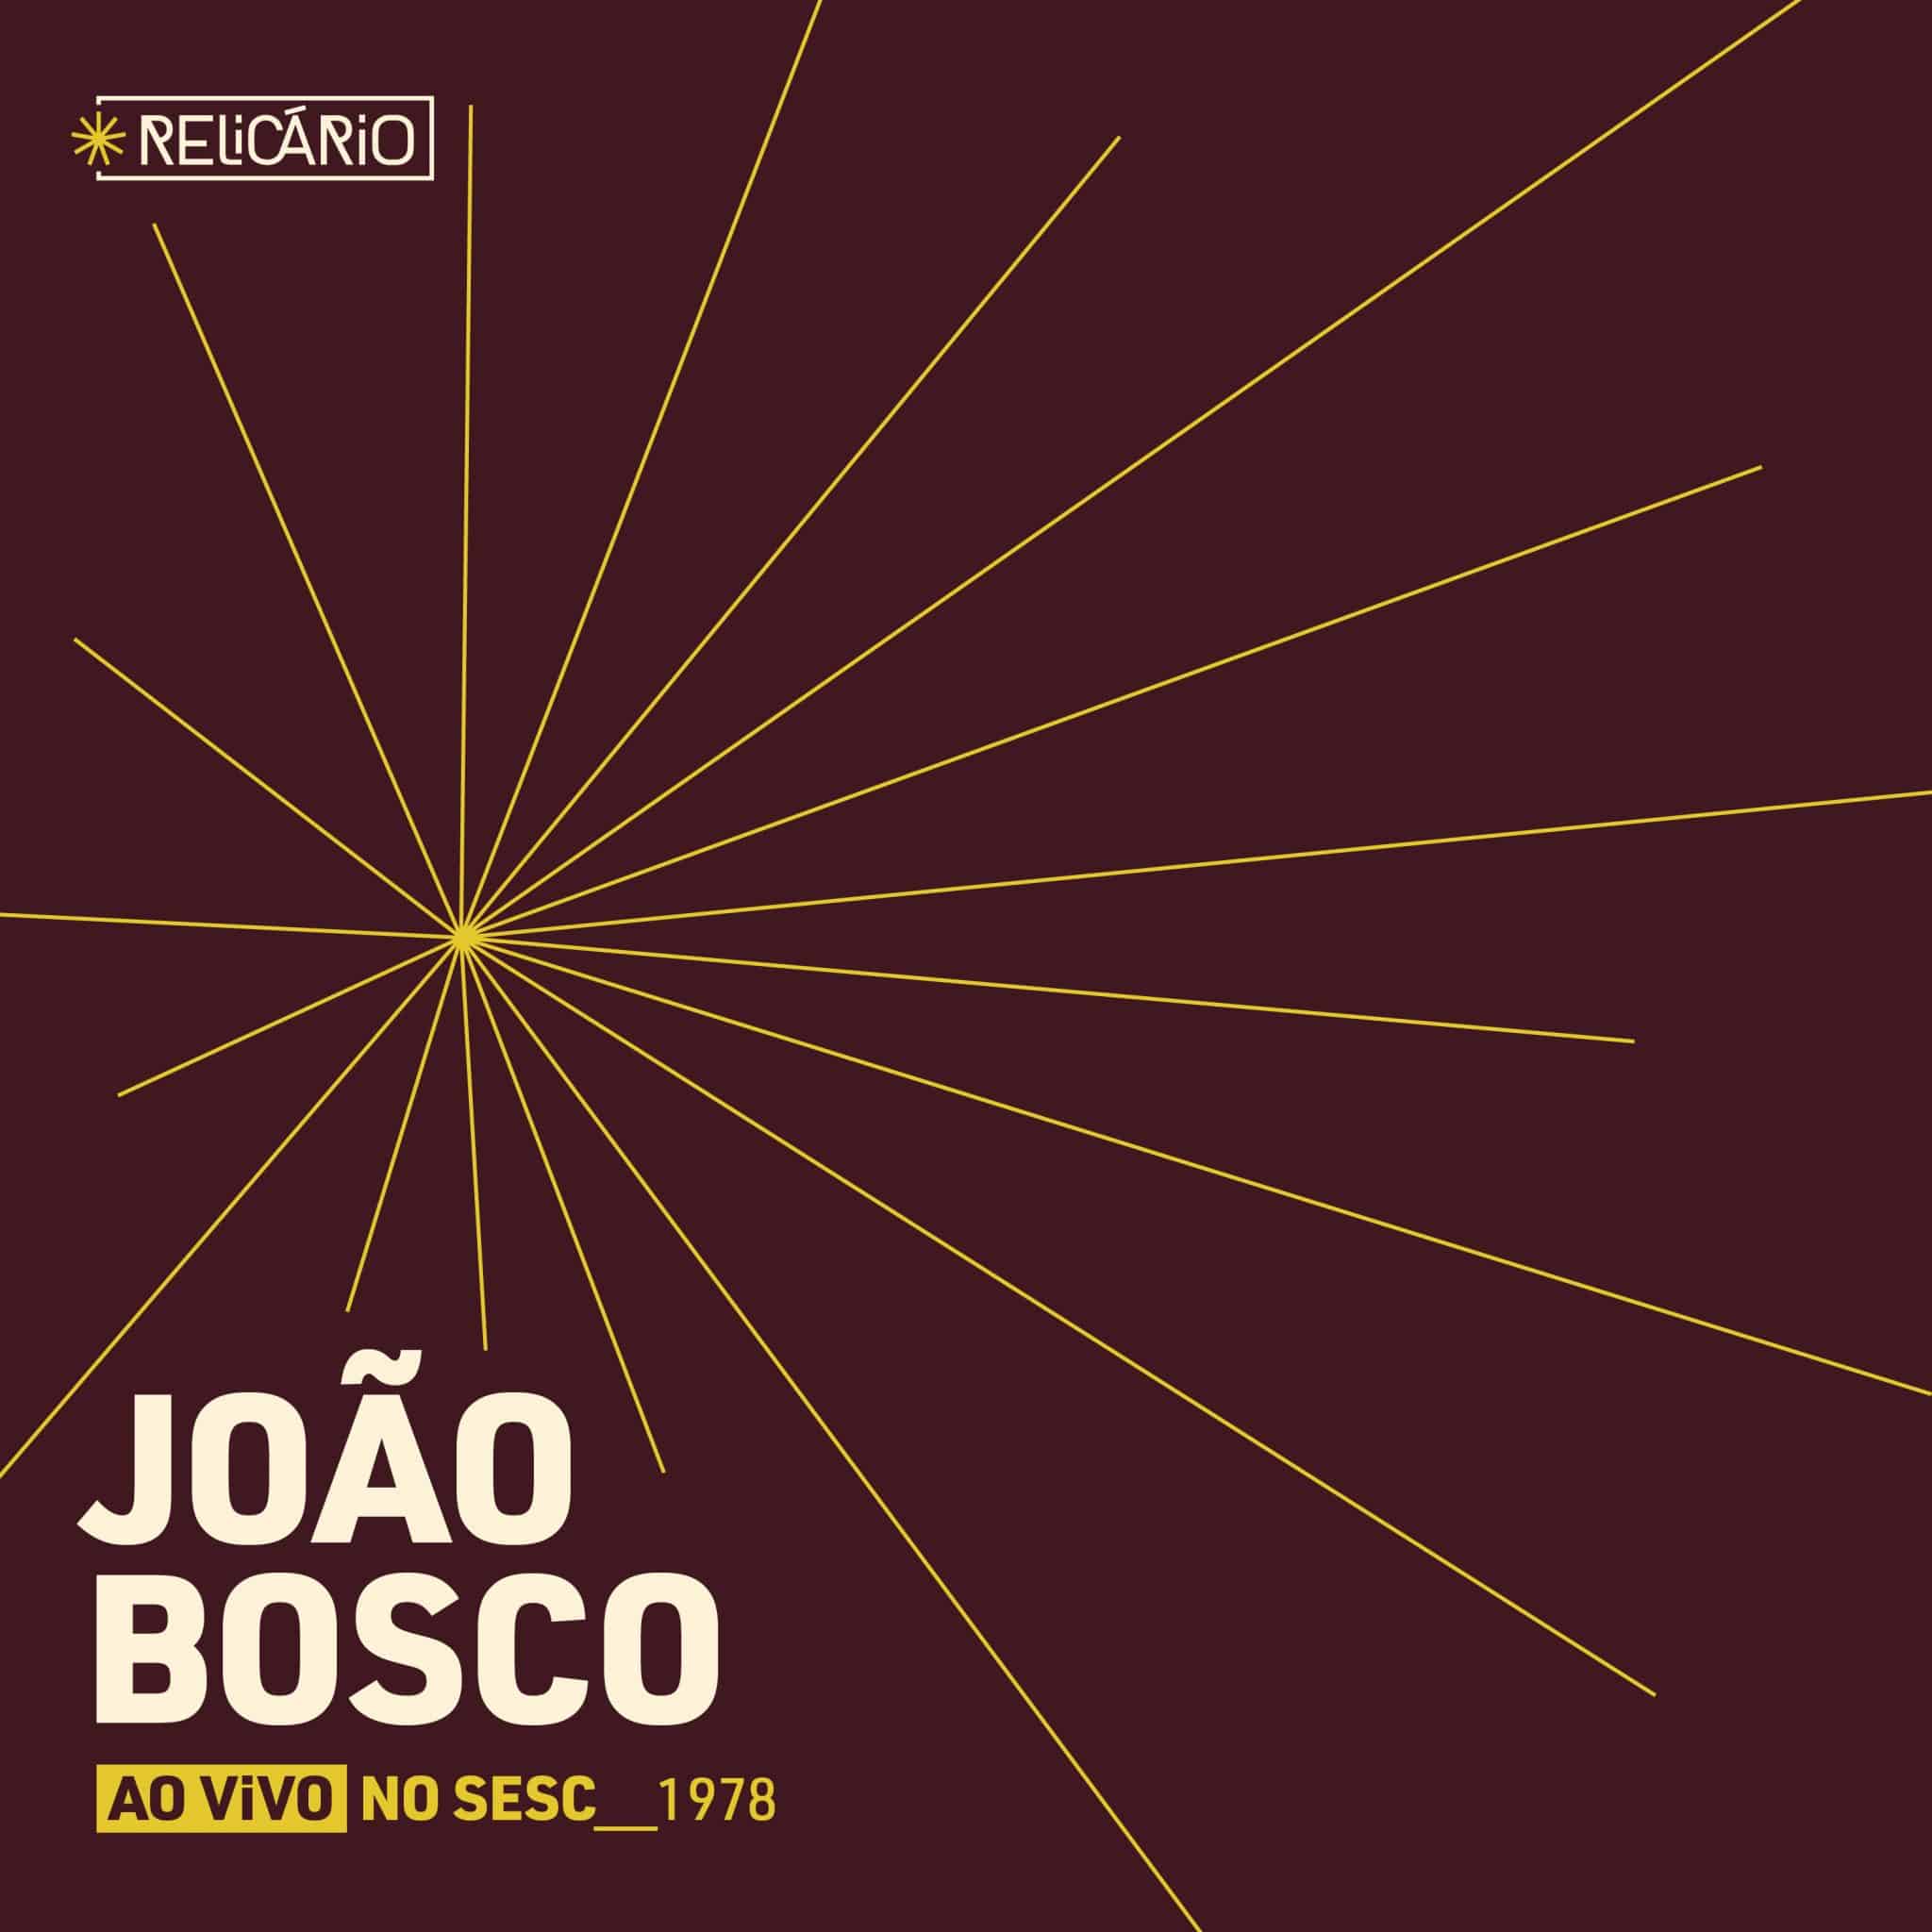 revistaprosaversoearte.com - Selo Sesc lança 'Relicário: João Bosco (ao vivo no Sesc 1978)', álbum do projeto Relicário